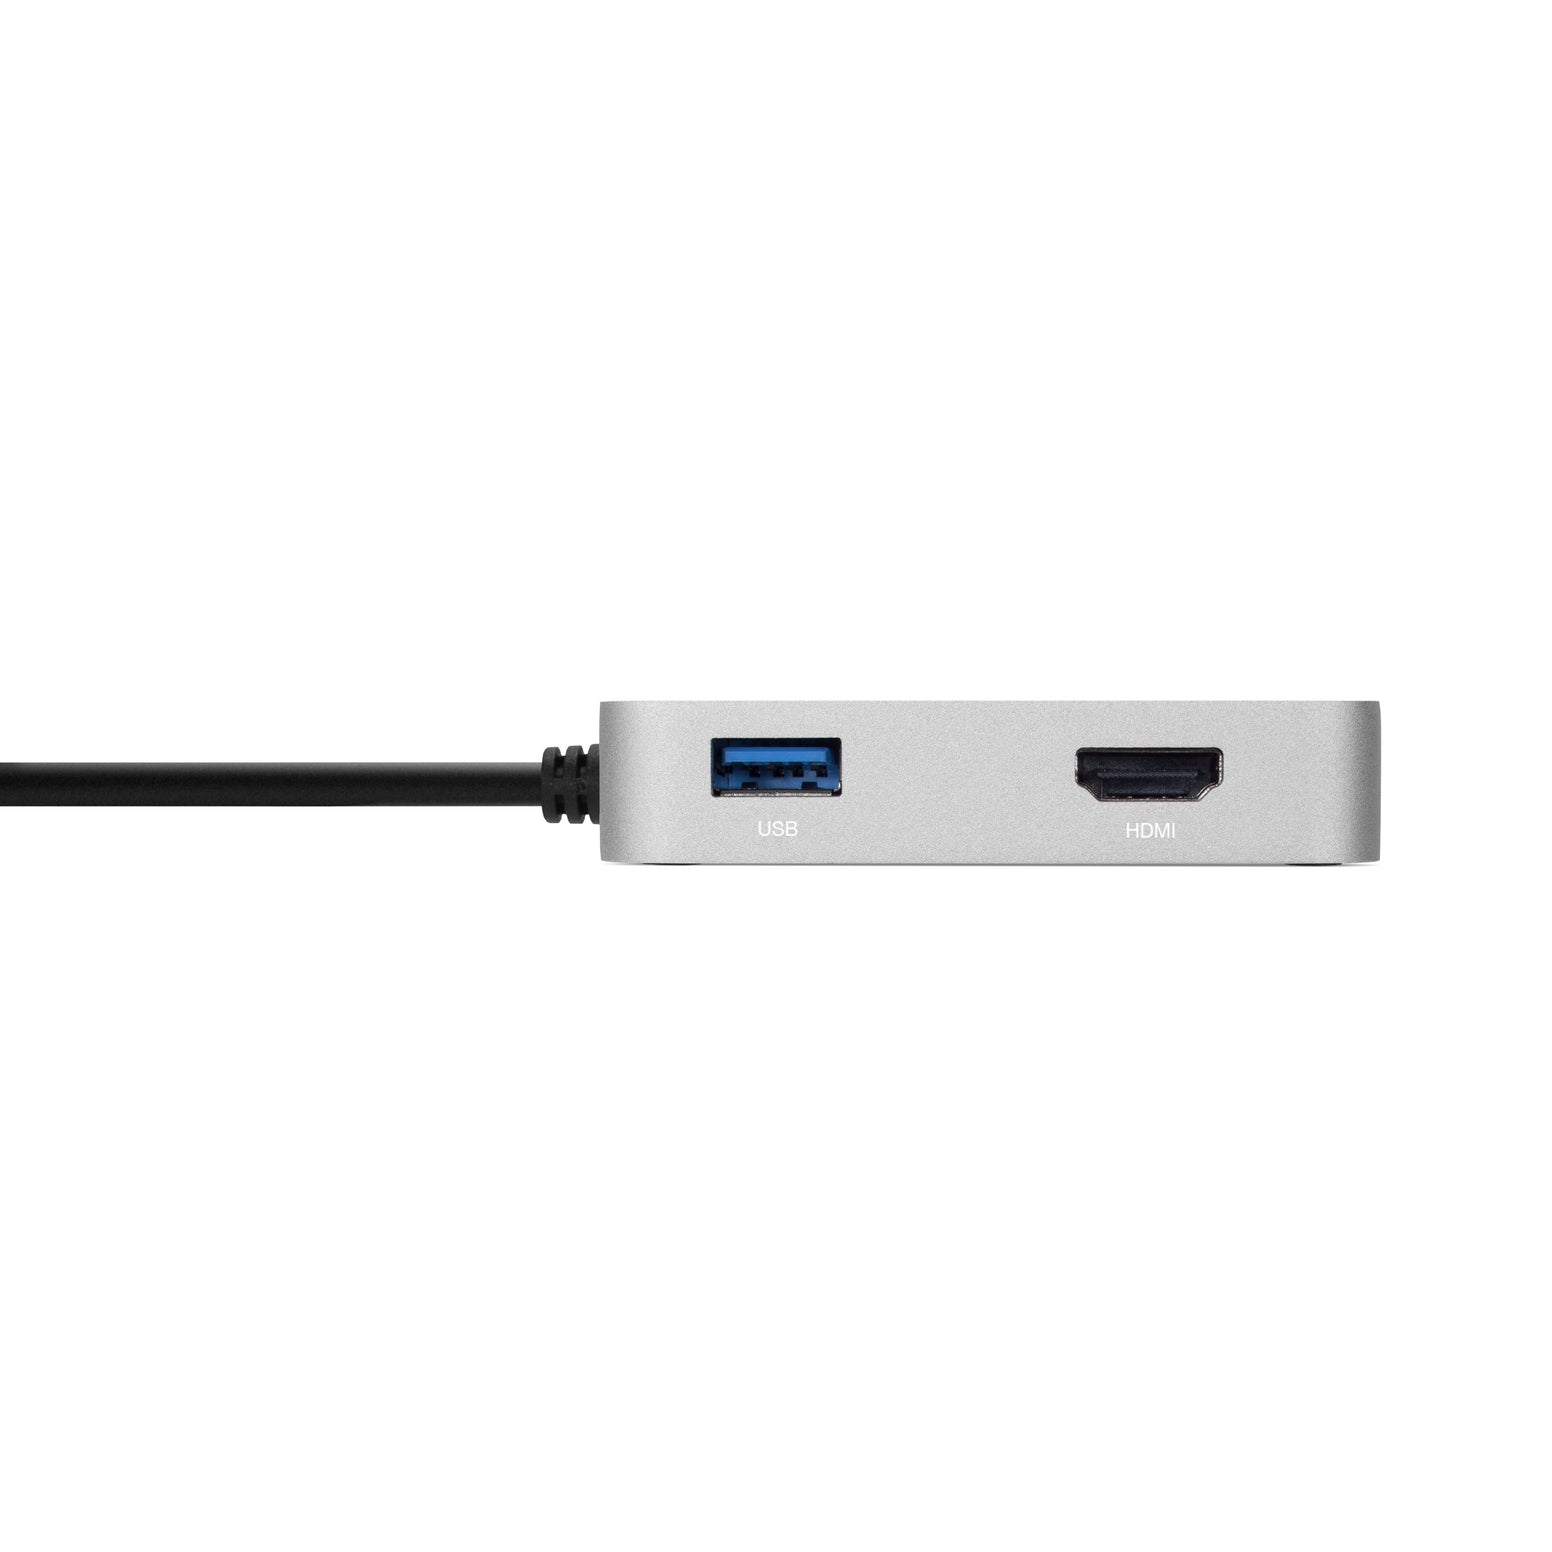 OWC USB-C Travel Dock - 60W - Silver - Discontinued